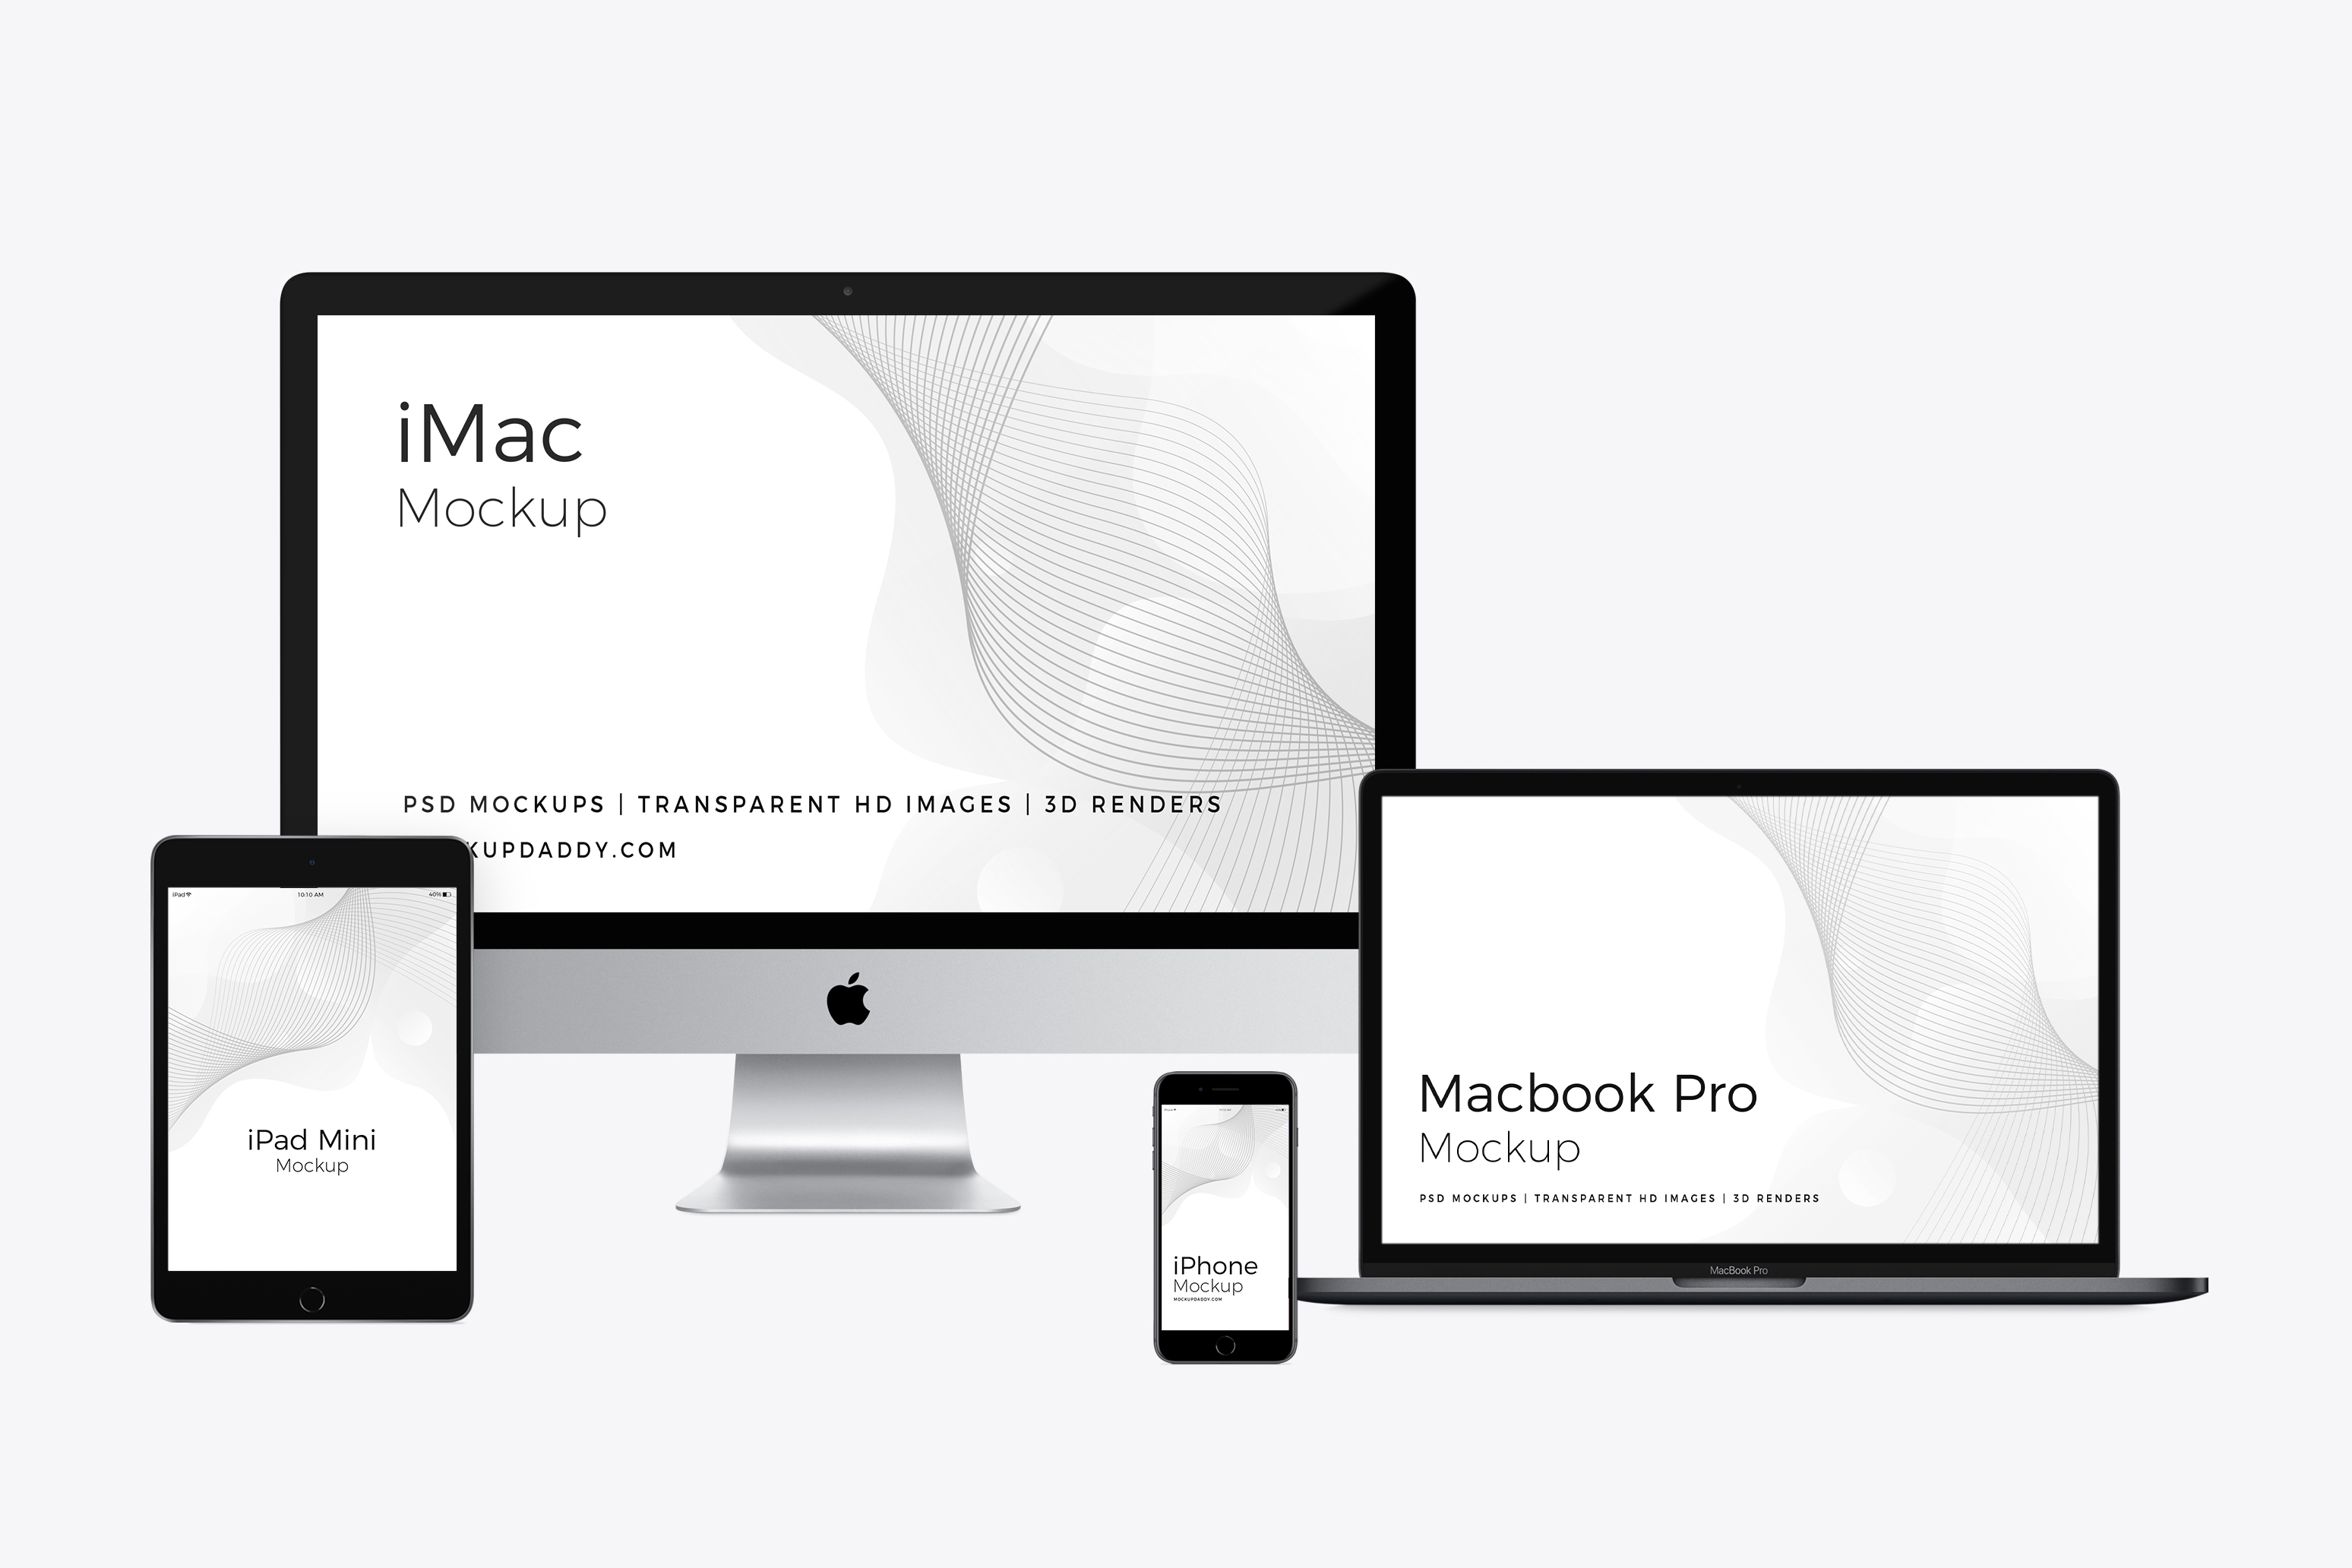 ipad Mini, imac and Macbook Pro Mockup